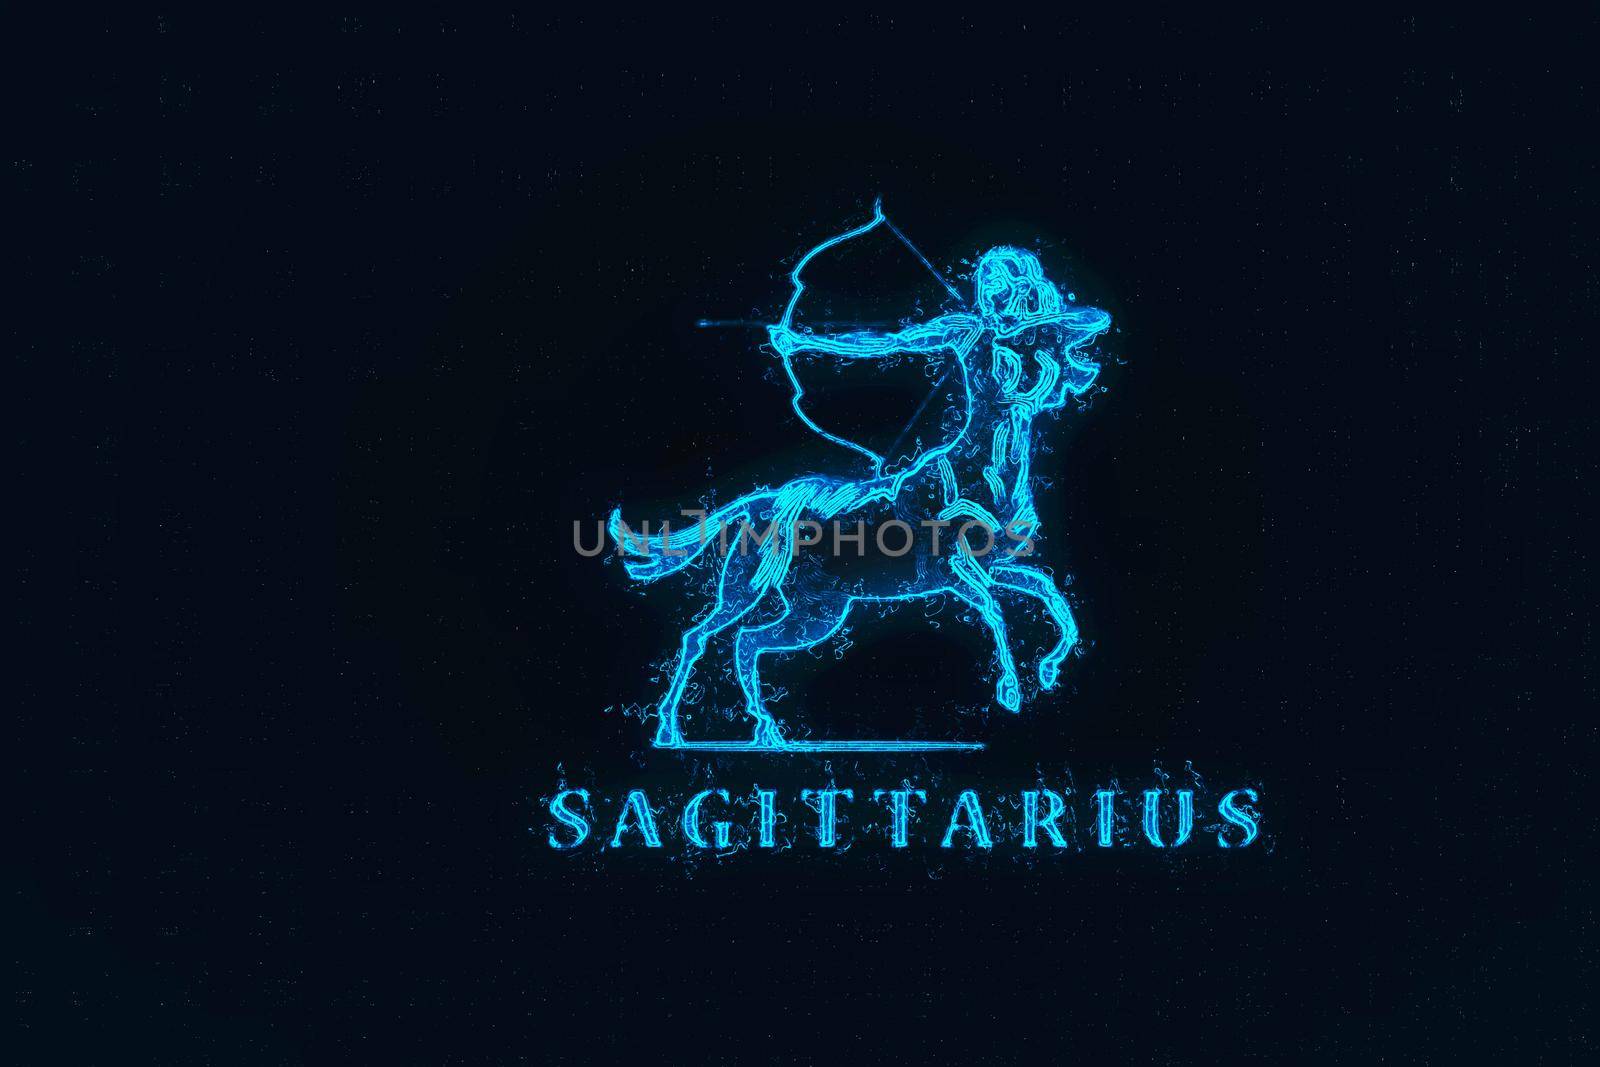 Sign of the zodiac Sagittarius. The centaur shoots a bow